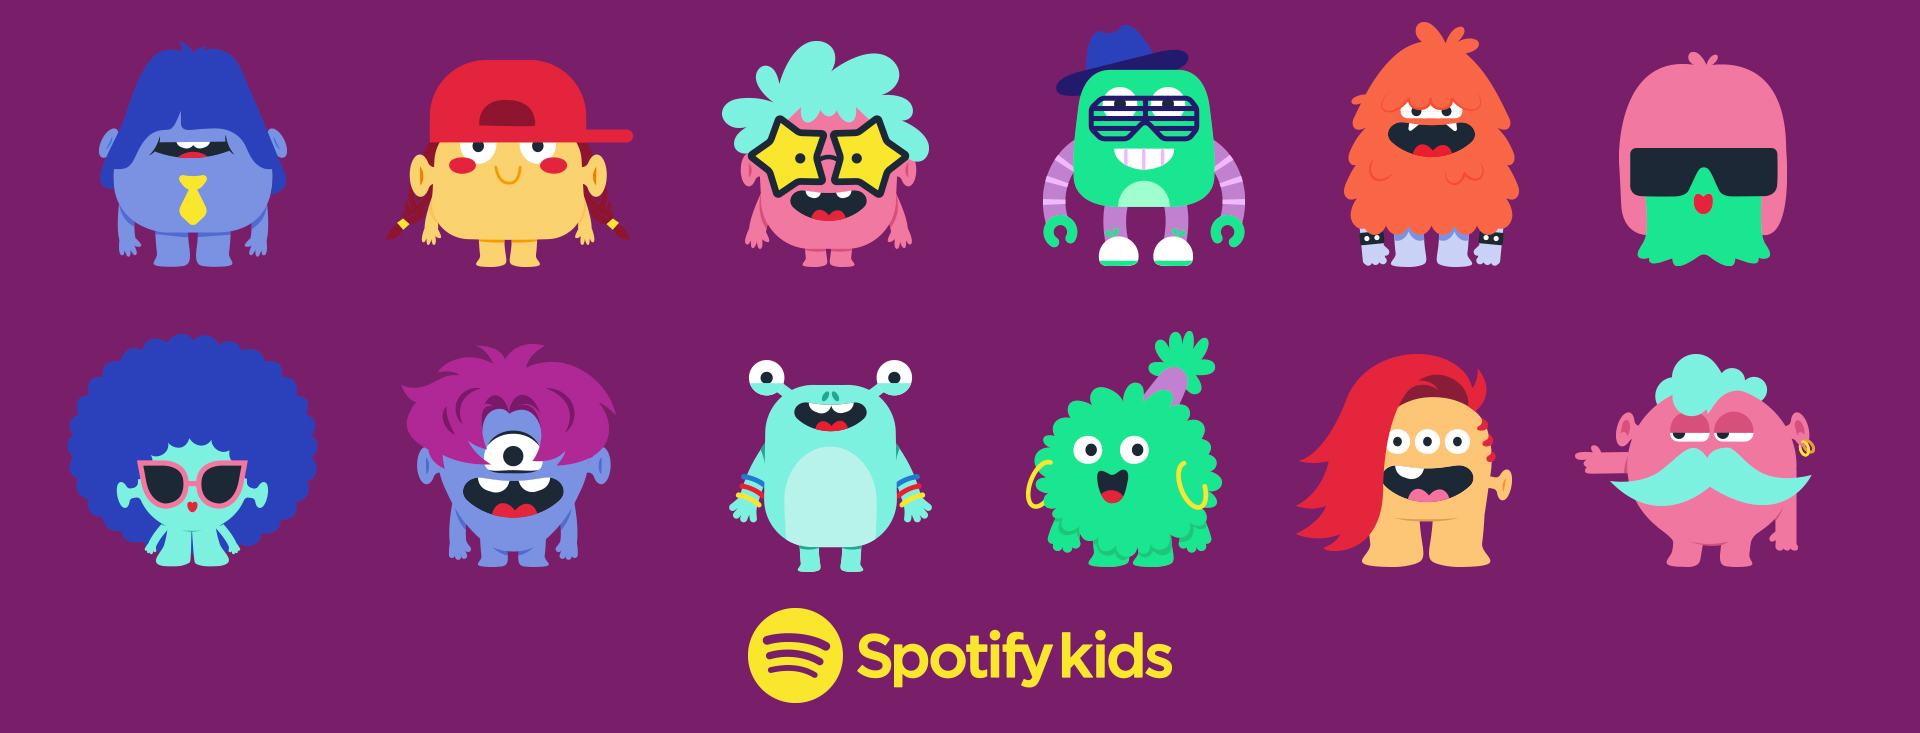 Spotify lança um novo aplicativo “Spotify Kids” independente para crianças